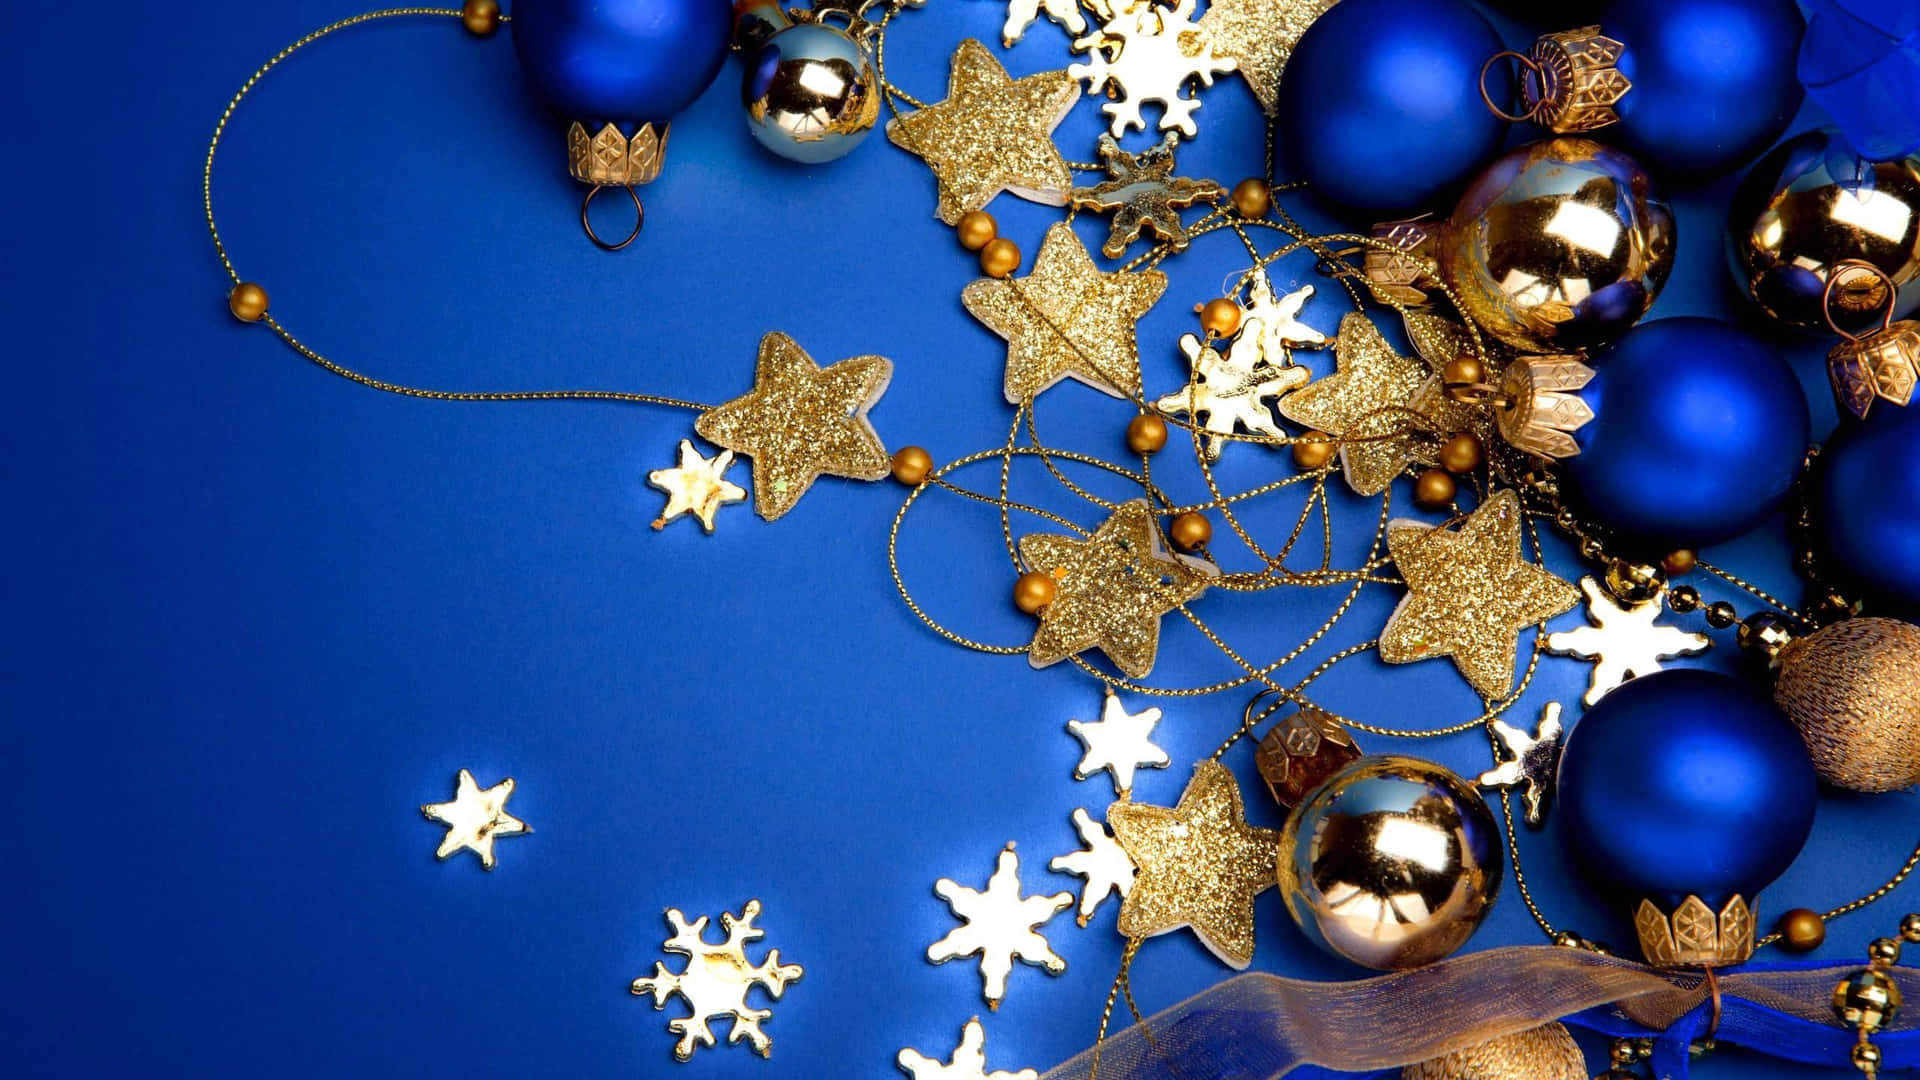 Spürensie Die Ruhe Und Gelassenheit Der Jahreszeit Mit Diesem Wunderschönen, Blauen Weihnachten. Wallpaper